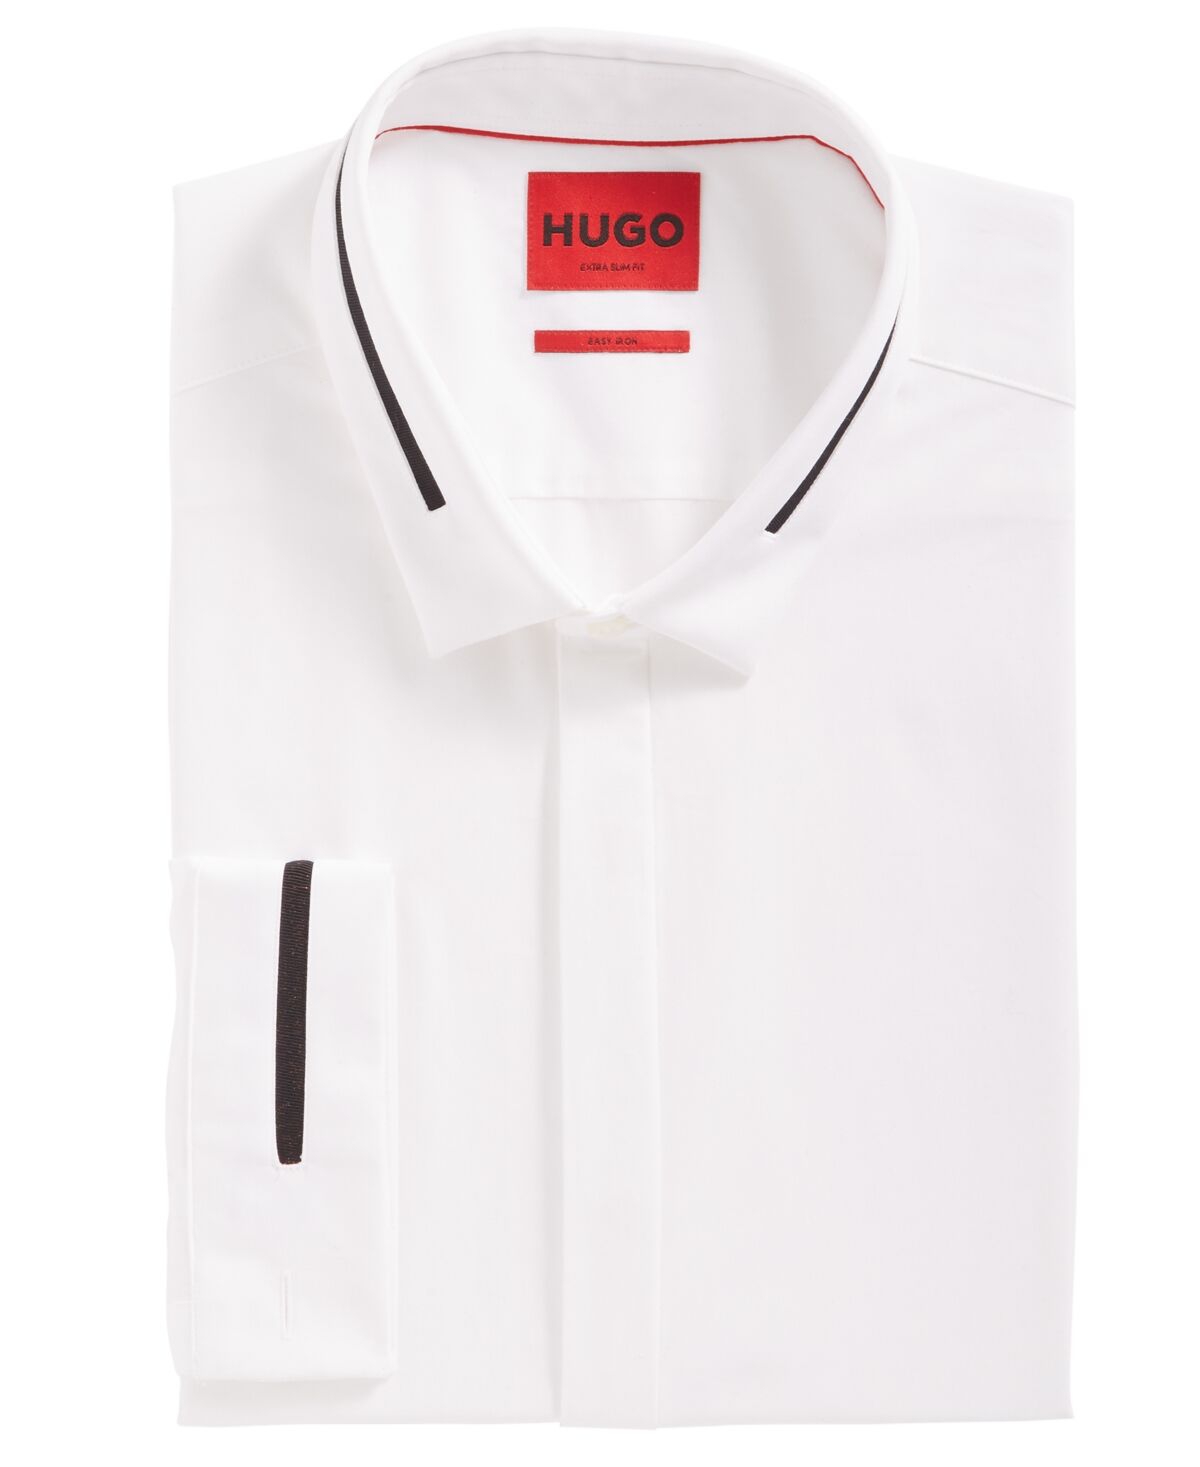 Hugo Boss by Hugo Boss Men's Extra-Slim Fit Eloy Shirt - White